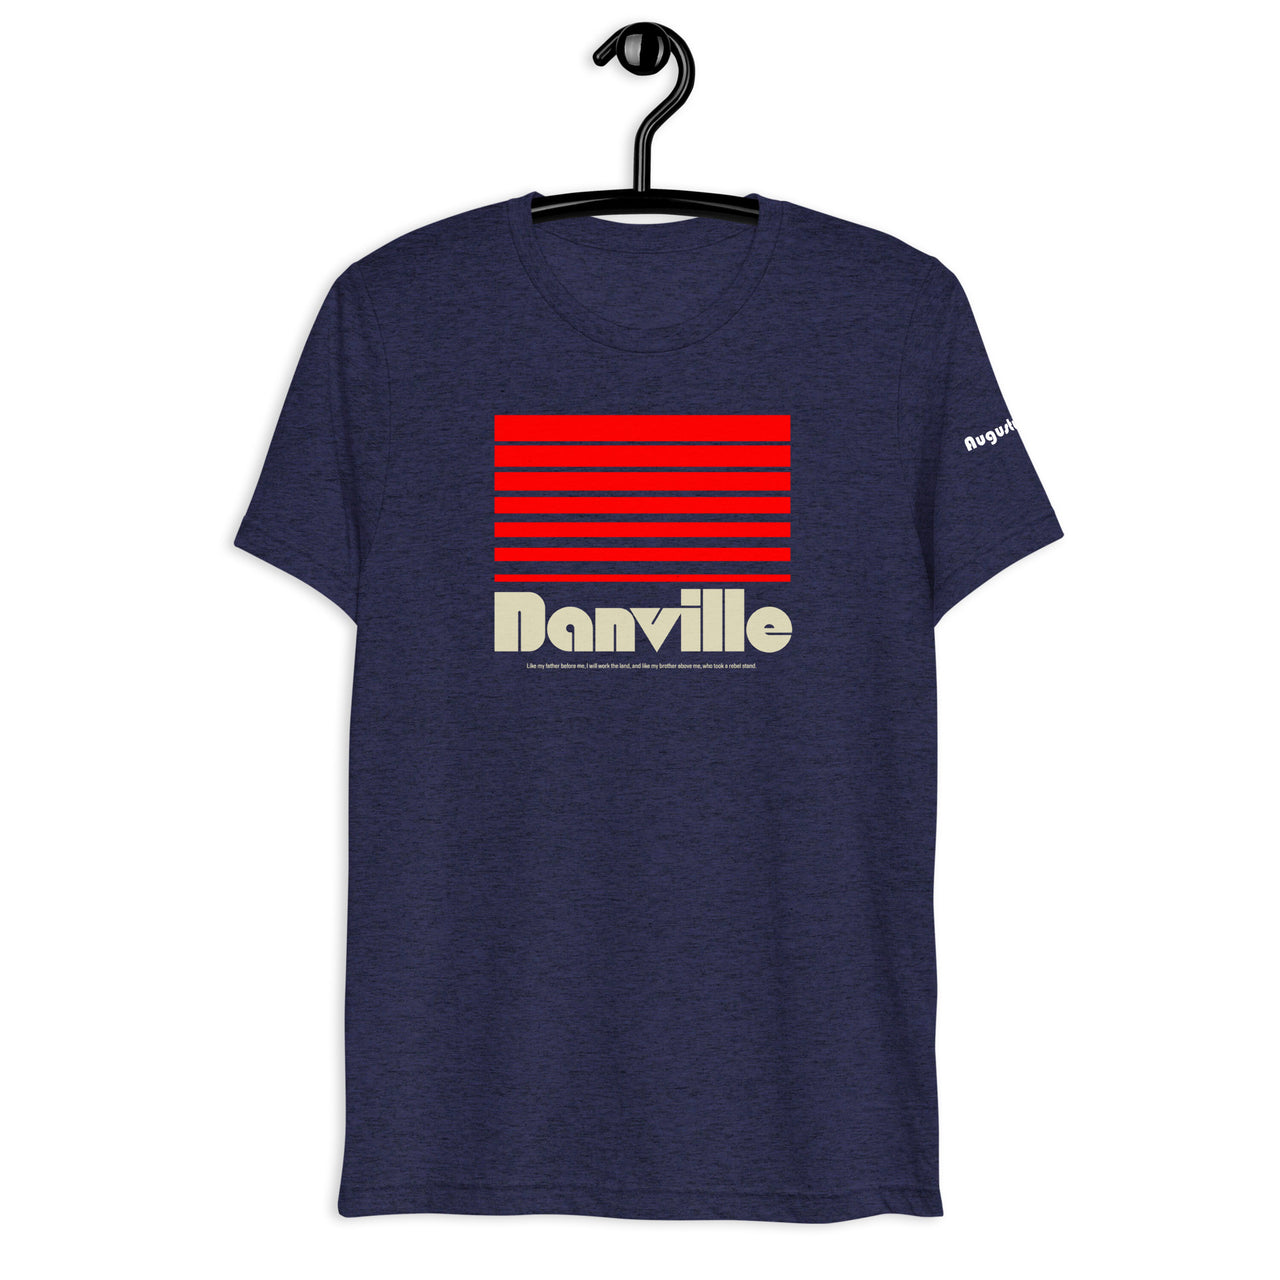 Danville - Womens